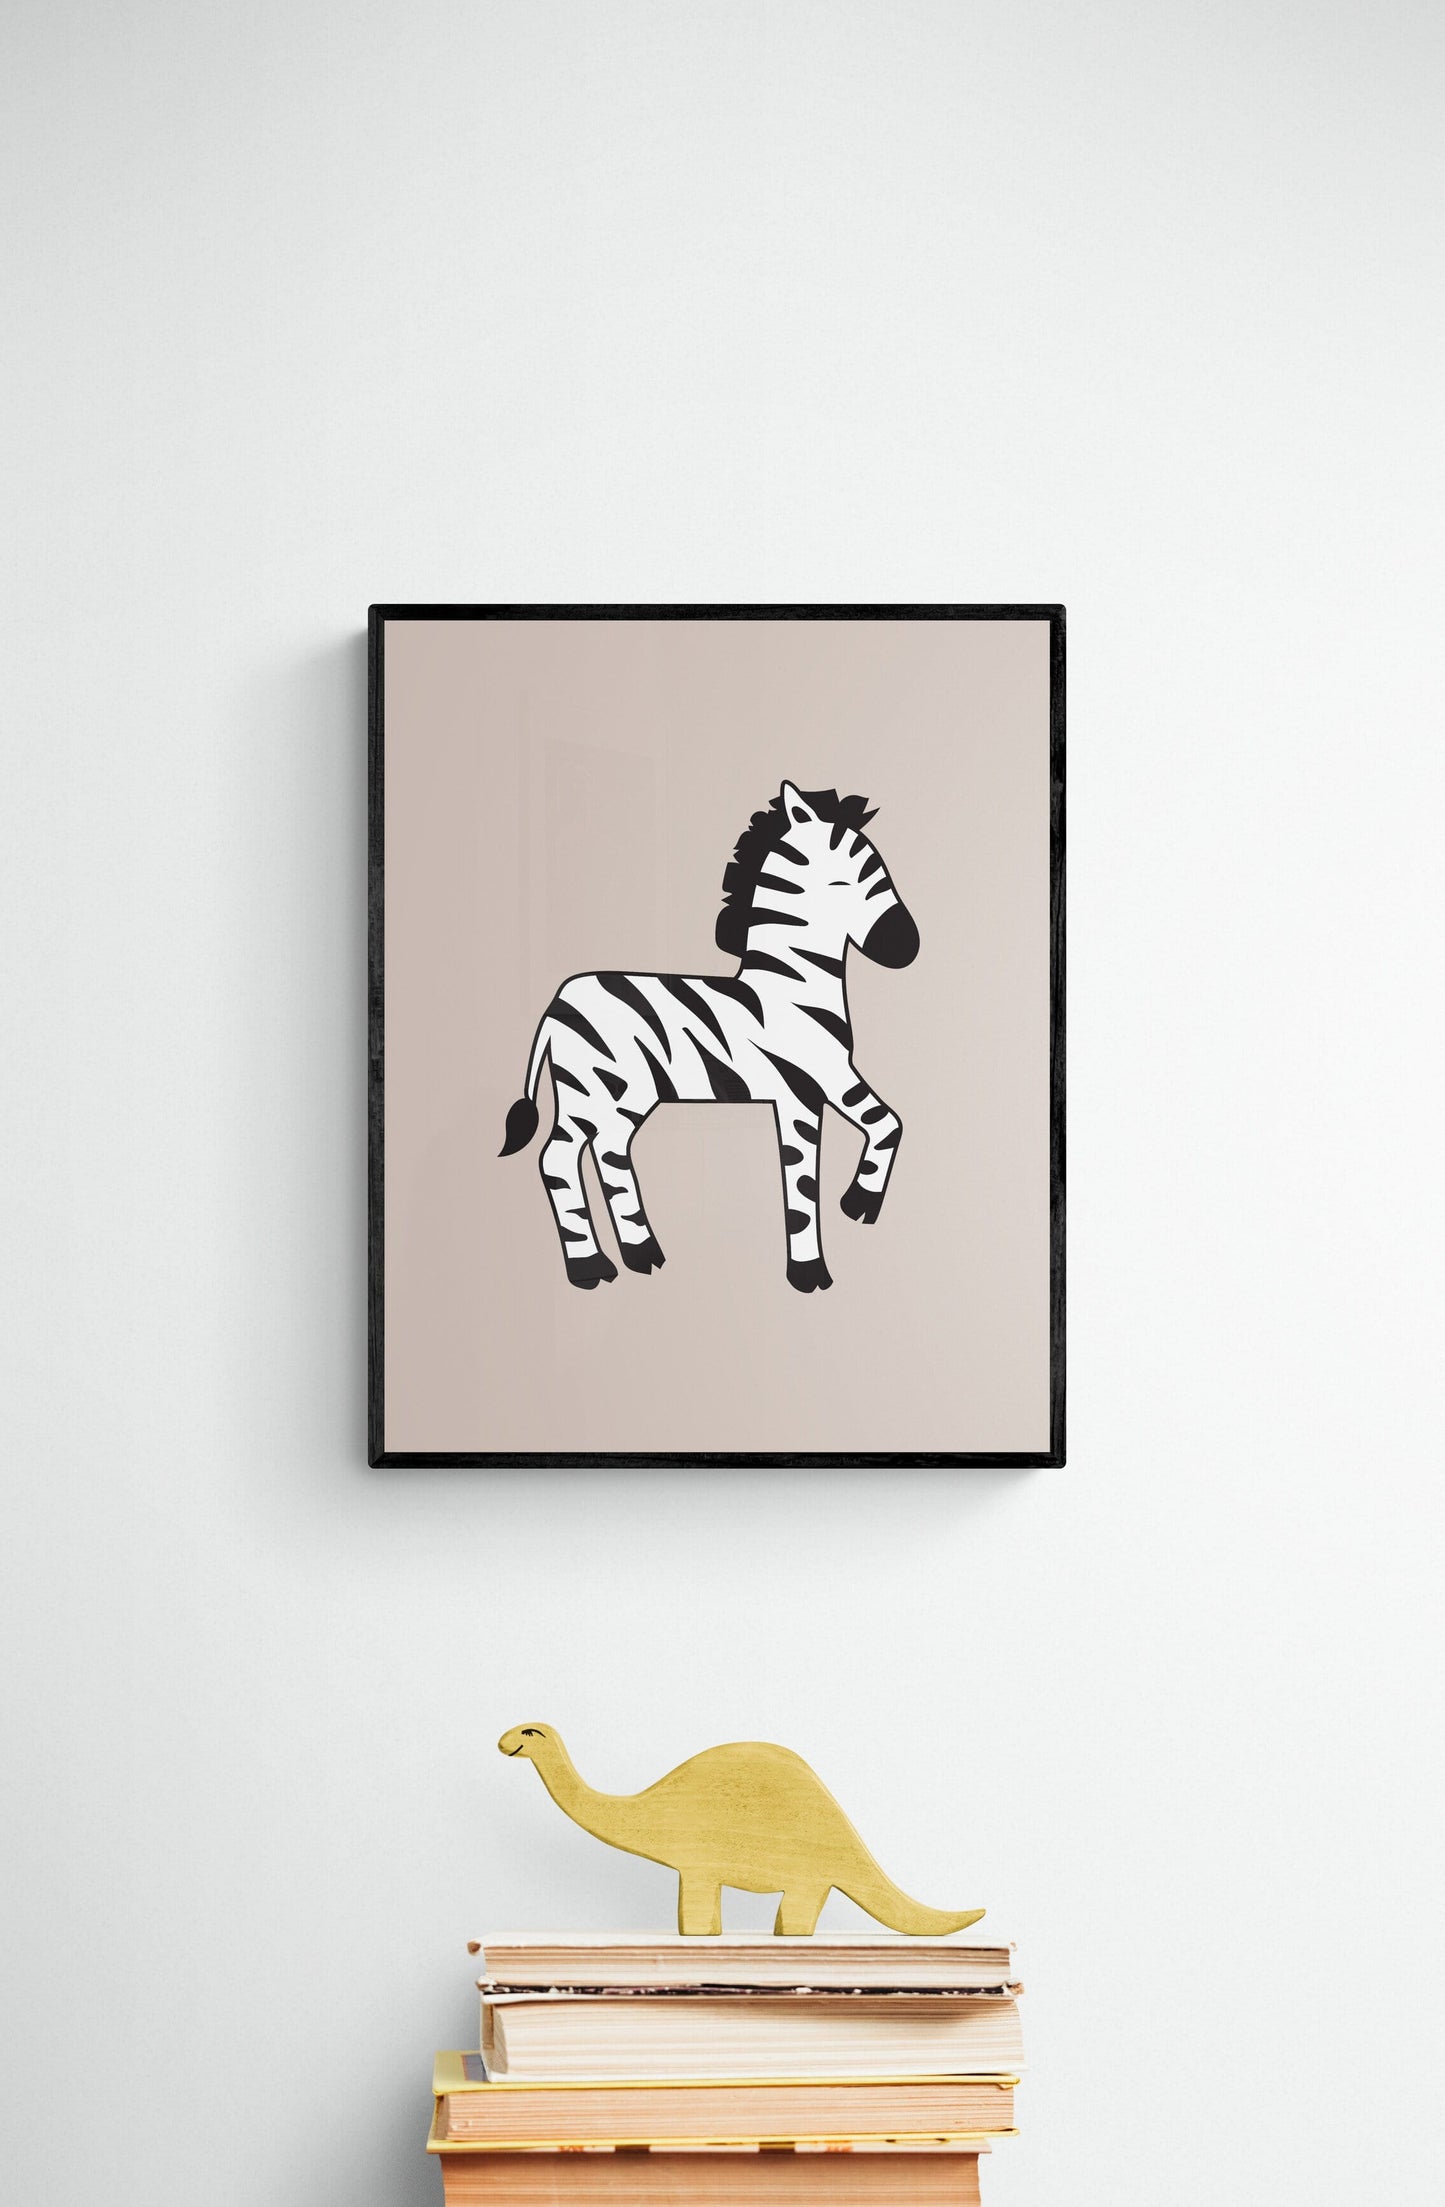 Happy Zebra Green Framed Art Print